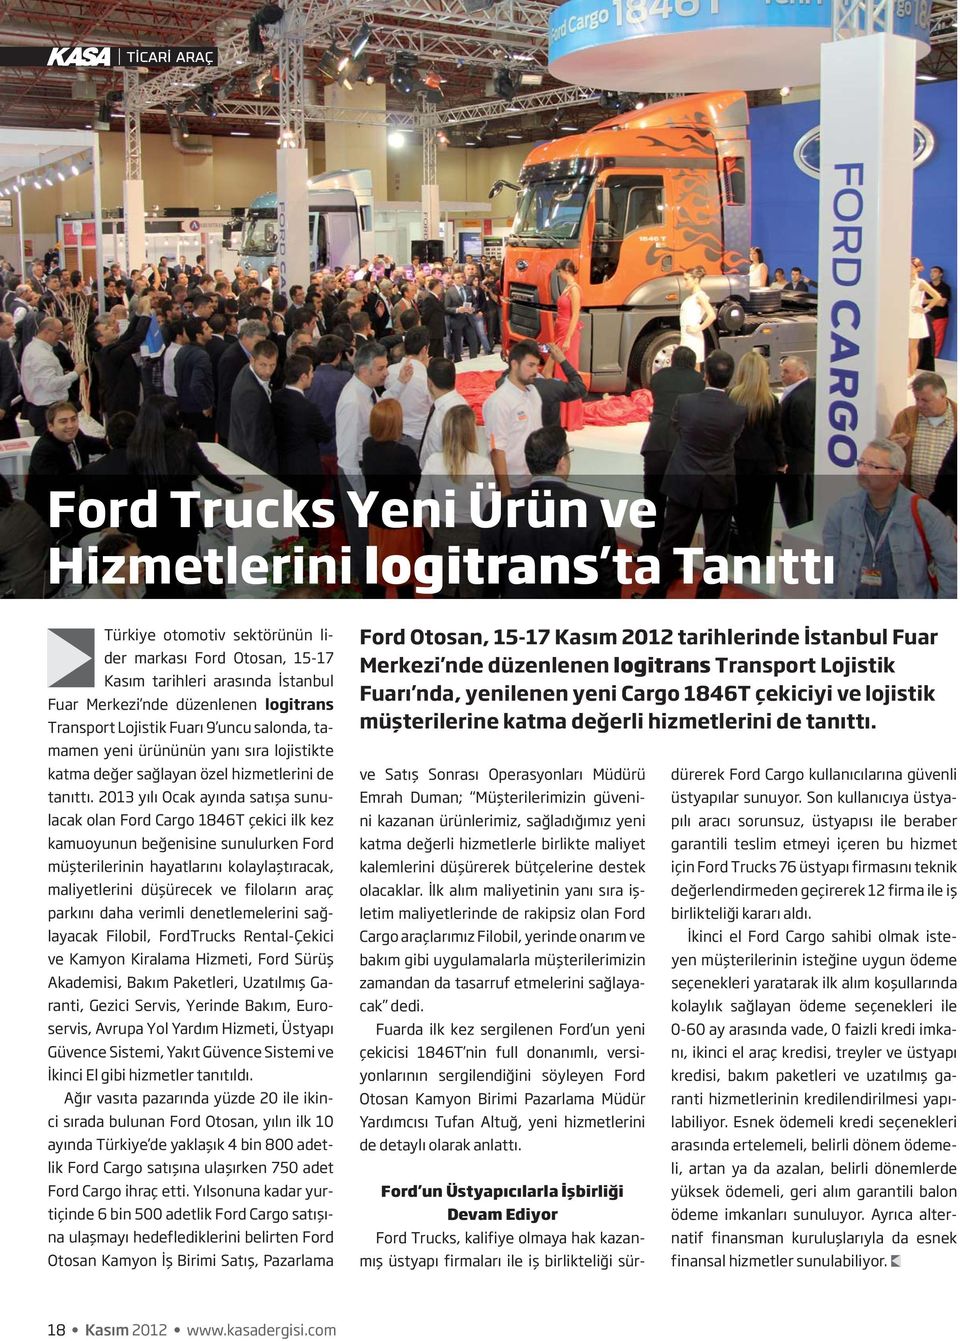 2013 yılı Ocak ayında satışa sunulacak olan Ford Cargo 1846T çekici ilk kez kamuoyunun beğenisine sunulurken Ford müşterilerinin hayatlarını kolaylaştıracak, maliyetlerini düşürecek ve filoların araç